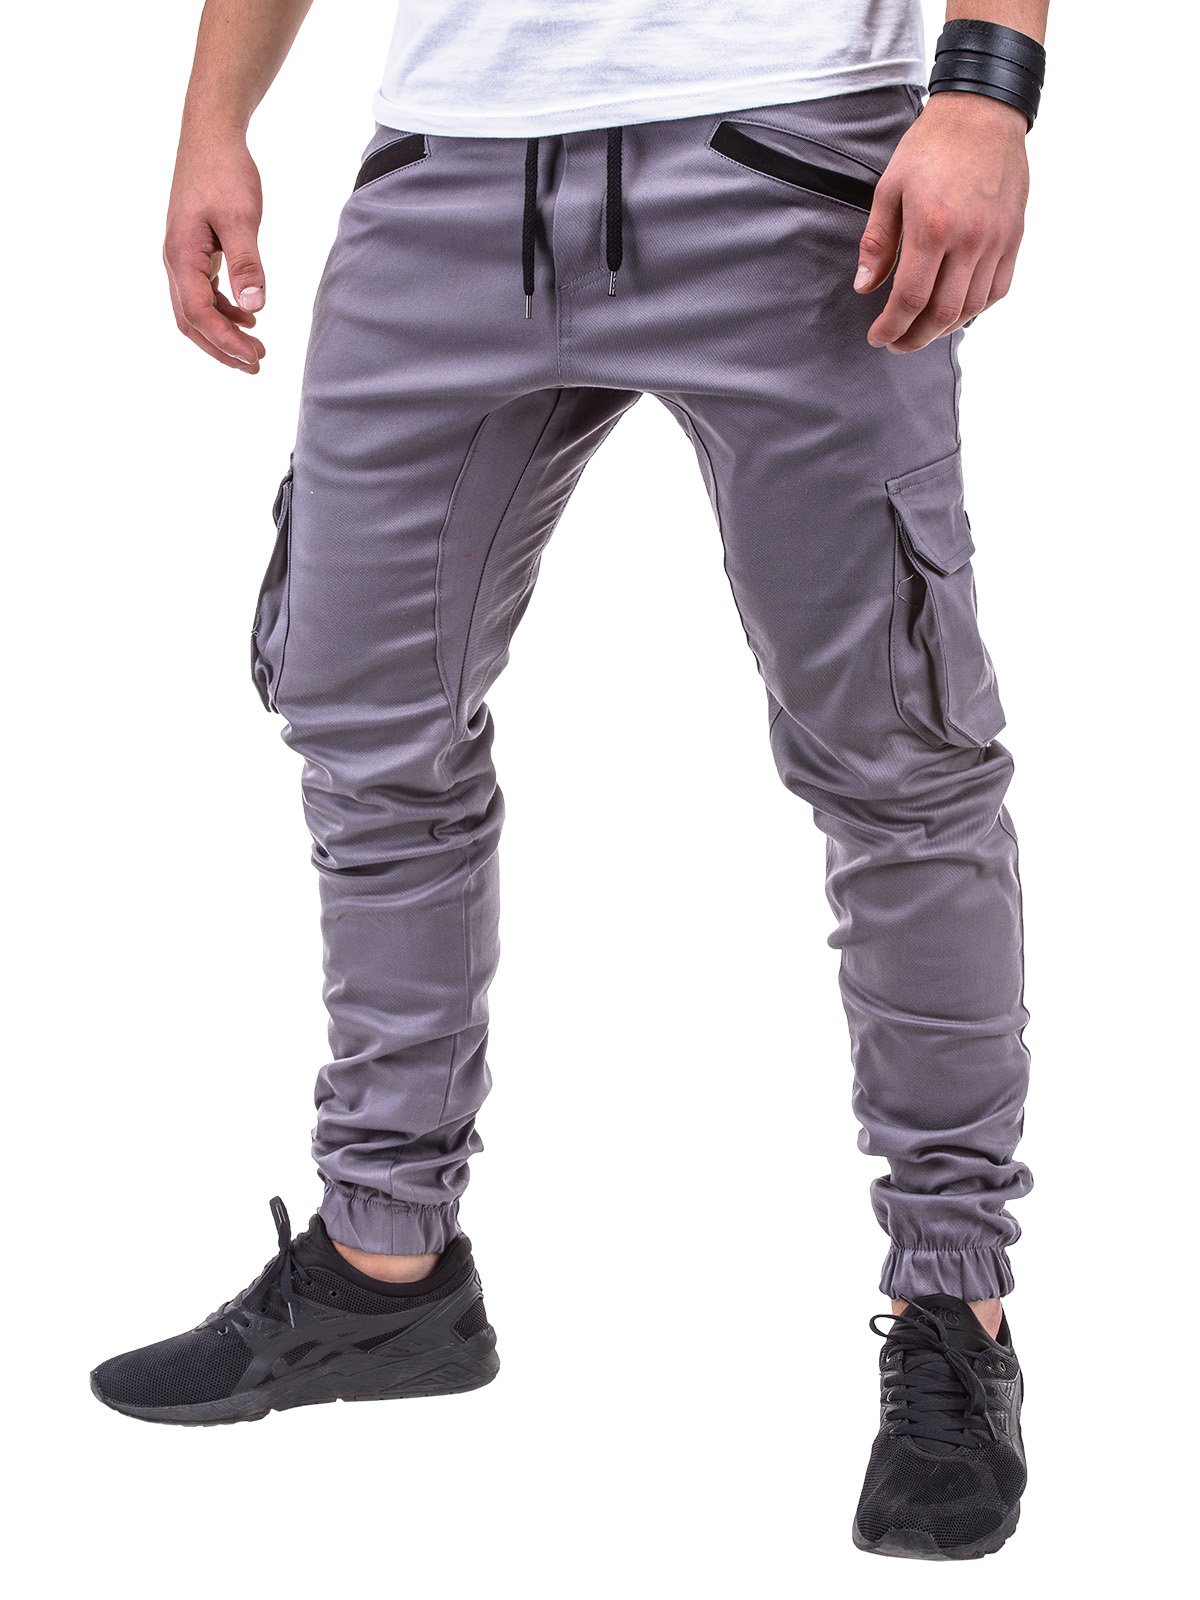 Men's pants joggers P388 - grey | MODONE wholesale - Clothing For Men